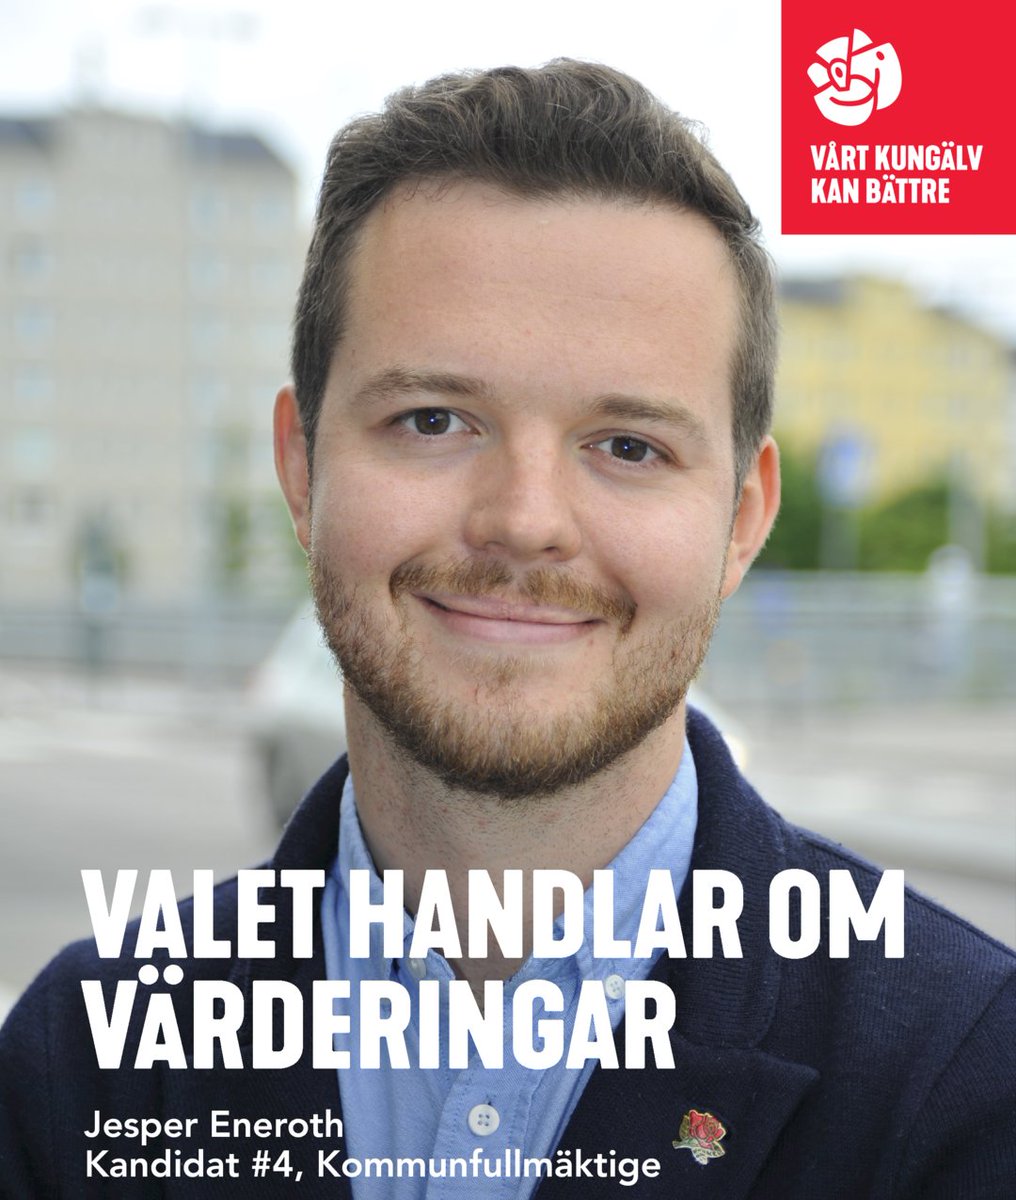 Jesper Eneroth, 27 år från Kungälv, Projektledare Kandidat #4, Kommunfullmäktige / Socialdemokraterna i Kungälv socialdemokraternakungalv.se/jesper-eneroth…